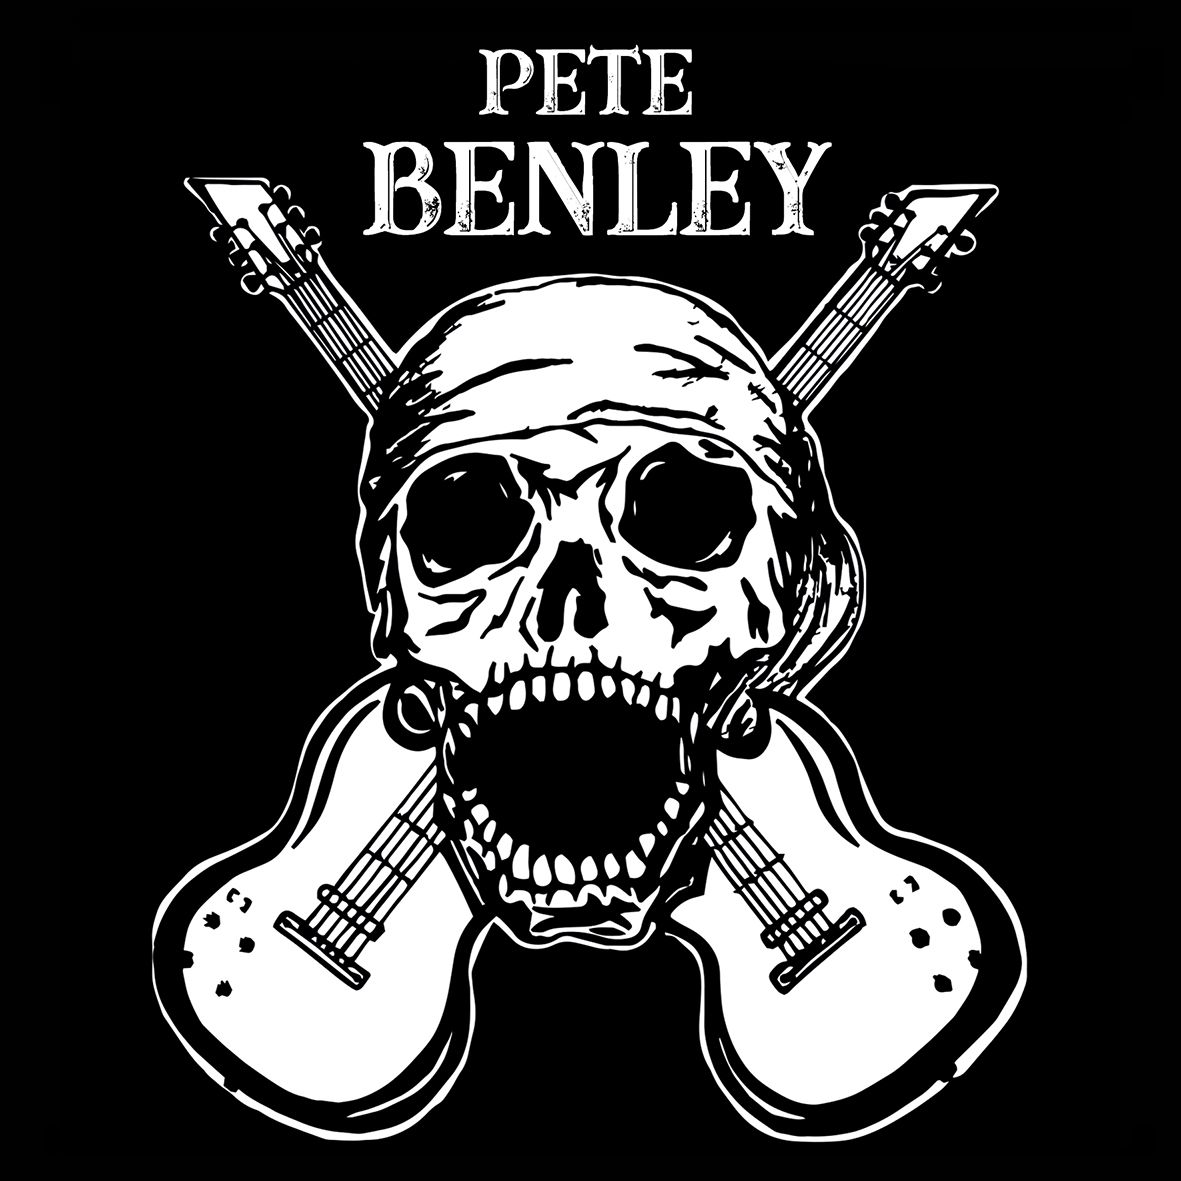 Pete Benley